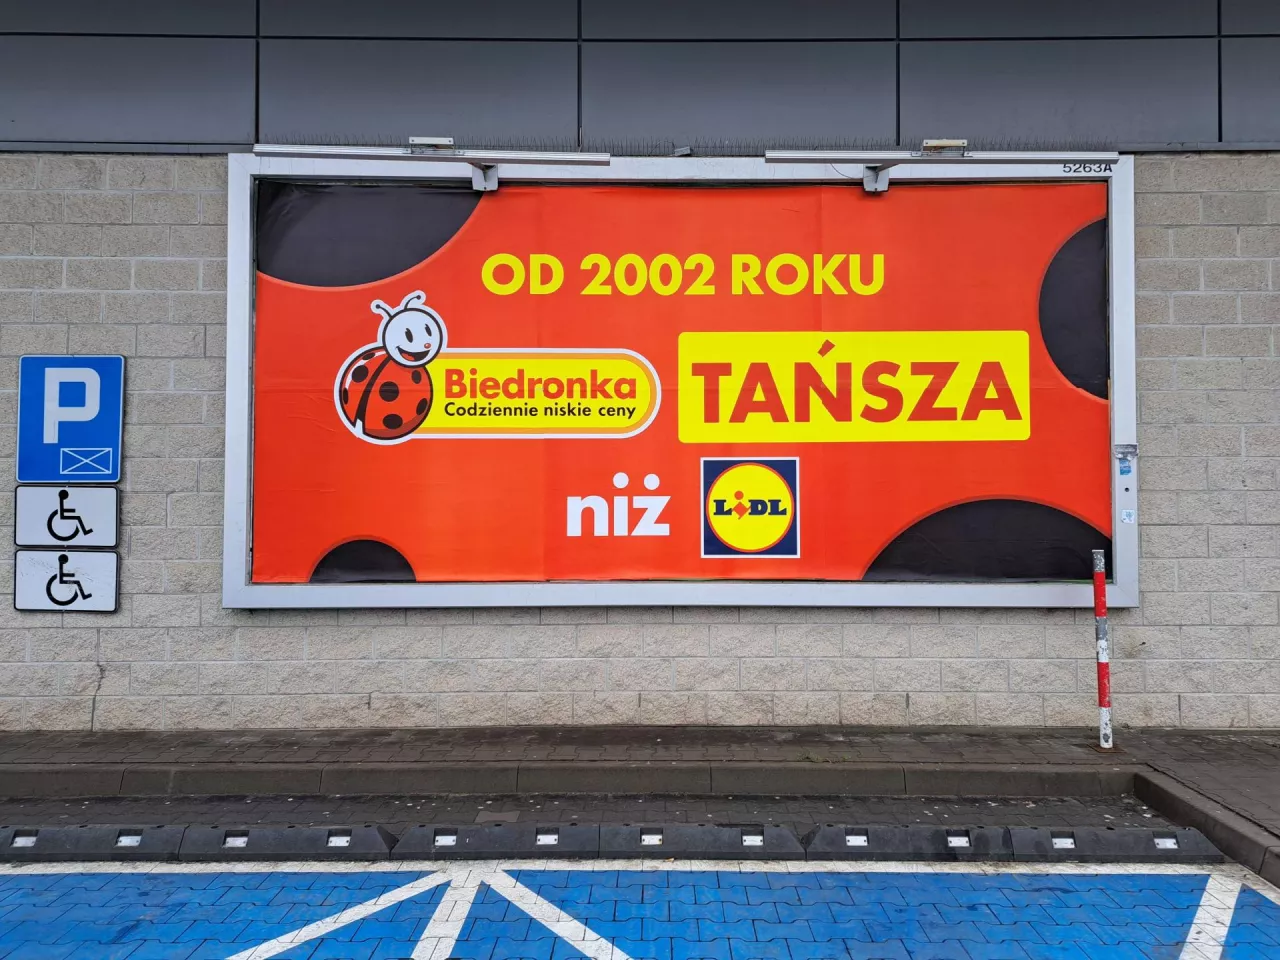 Biedronka informuje na plakatach, że jest tańsza niż Lidl od 2002 roku (fot. wiadomoscihandlowe.pl/MG)